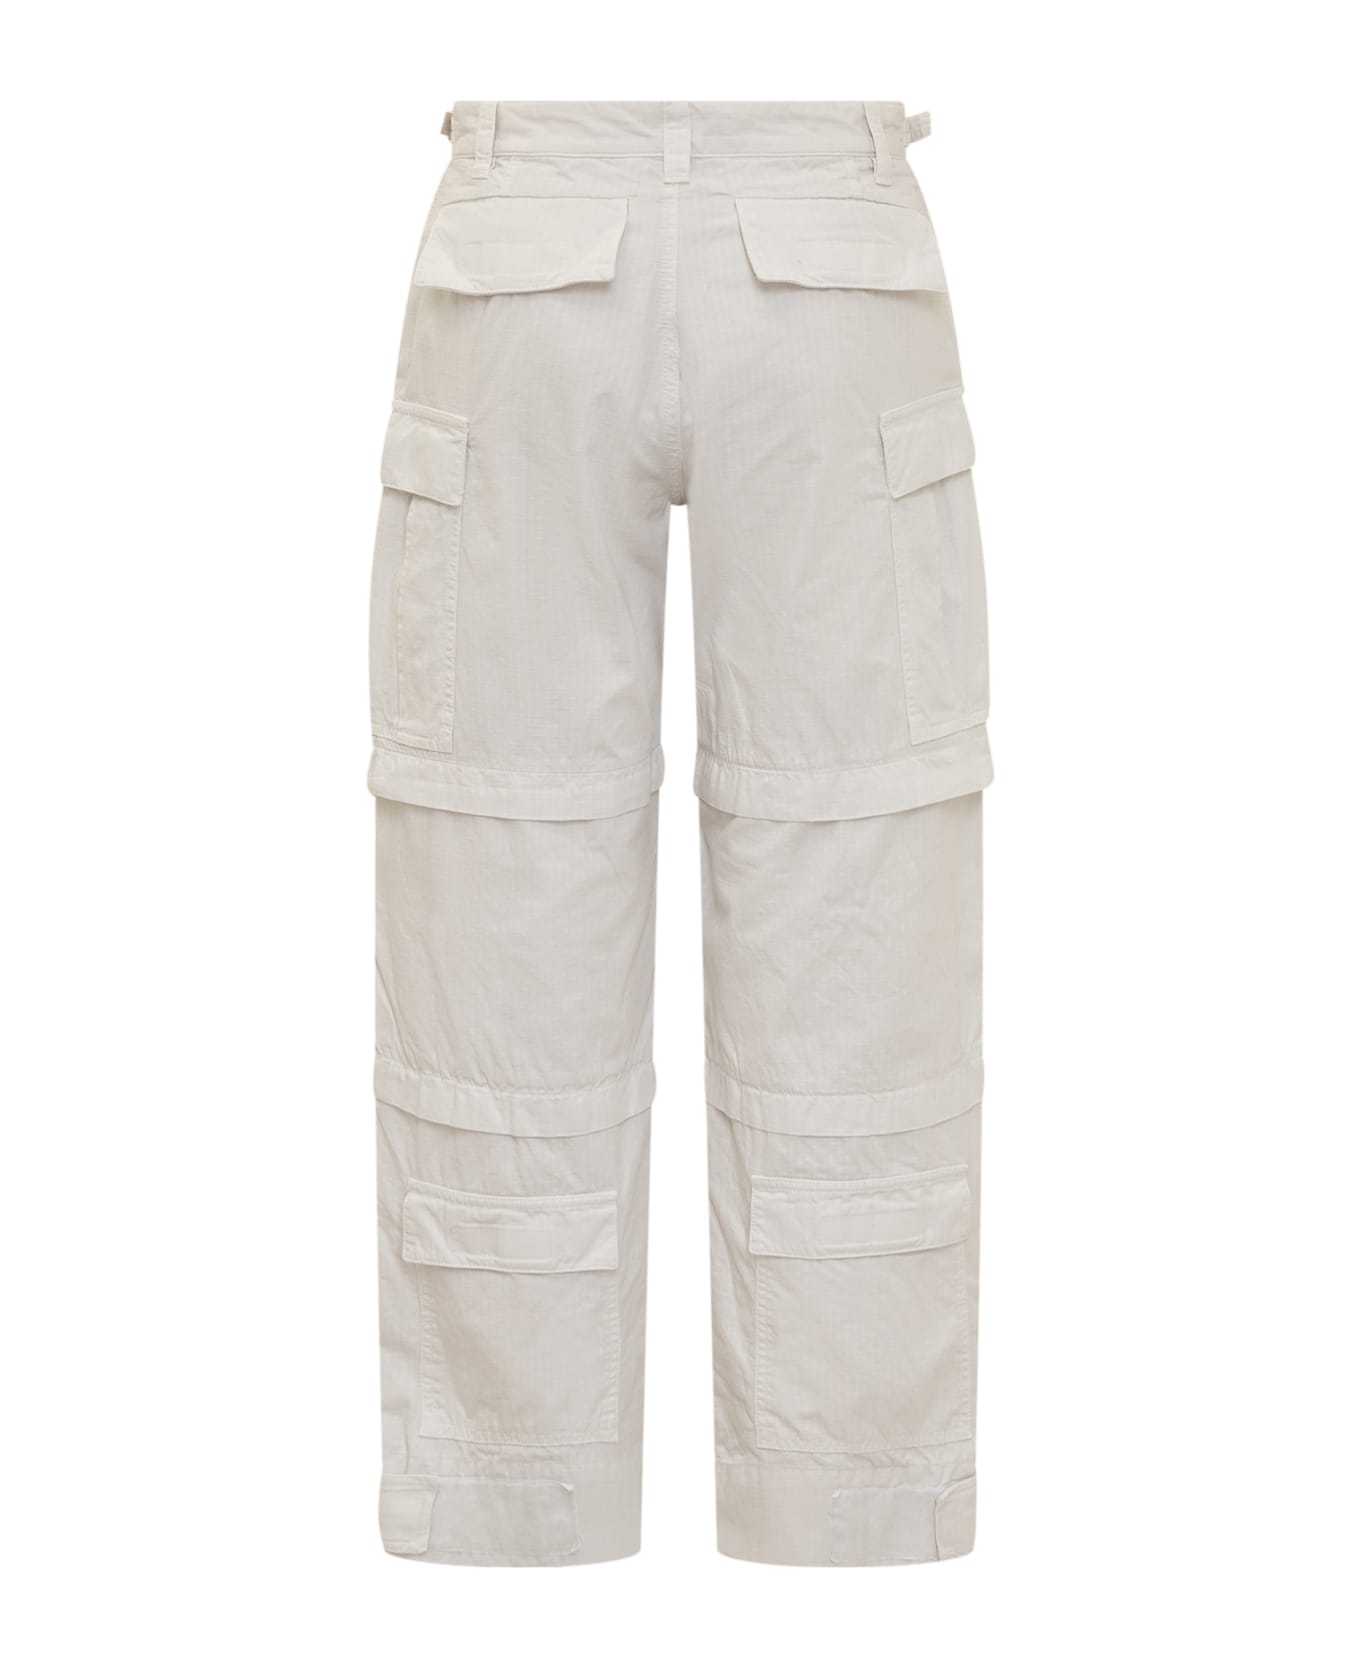 DARKPARK Julia Ripstop Cargo Trousers - OFF WHITE